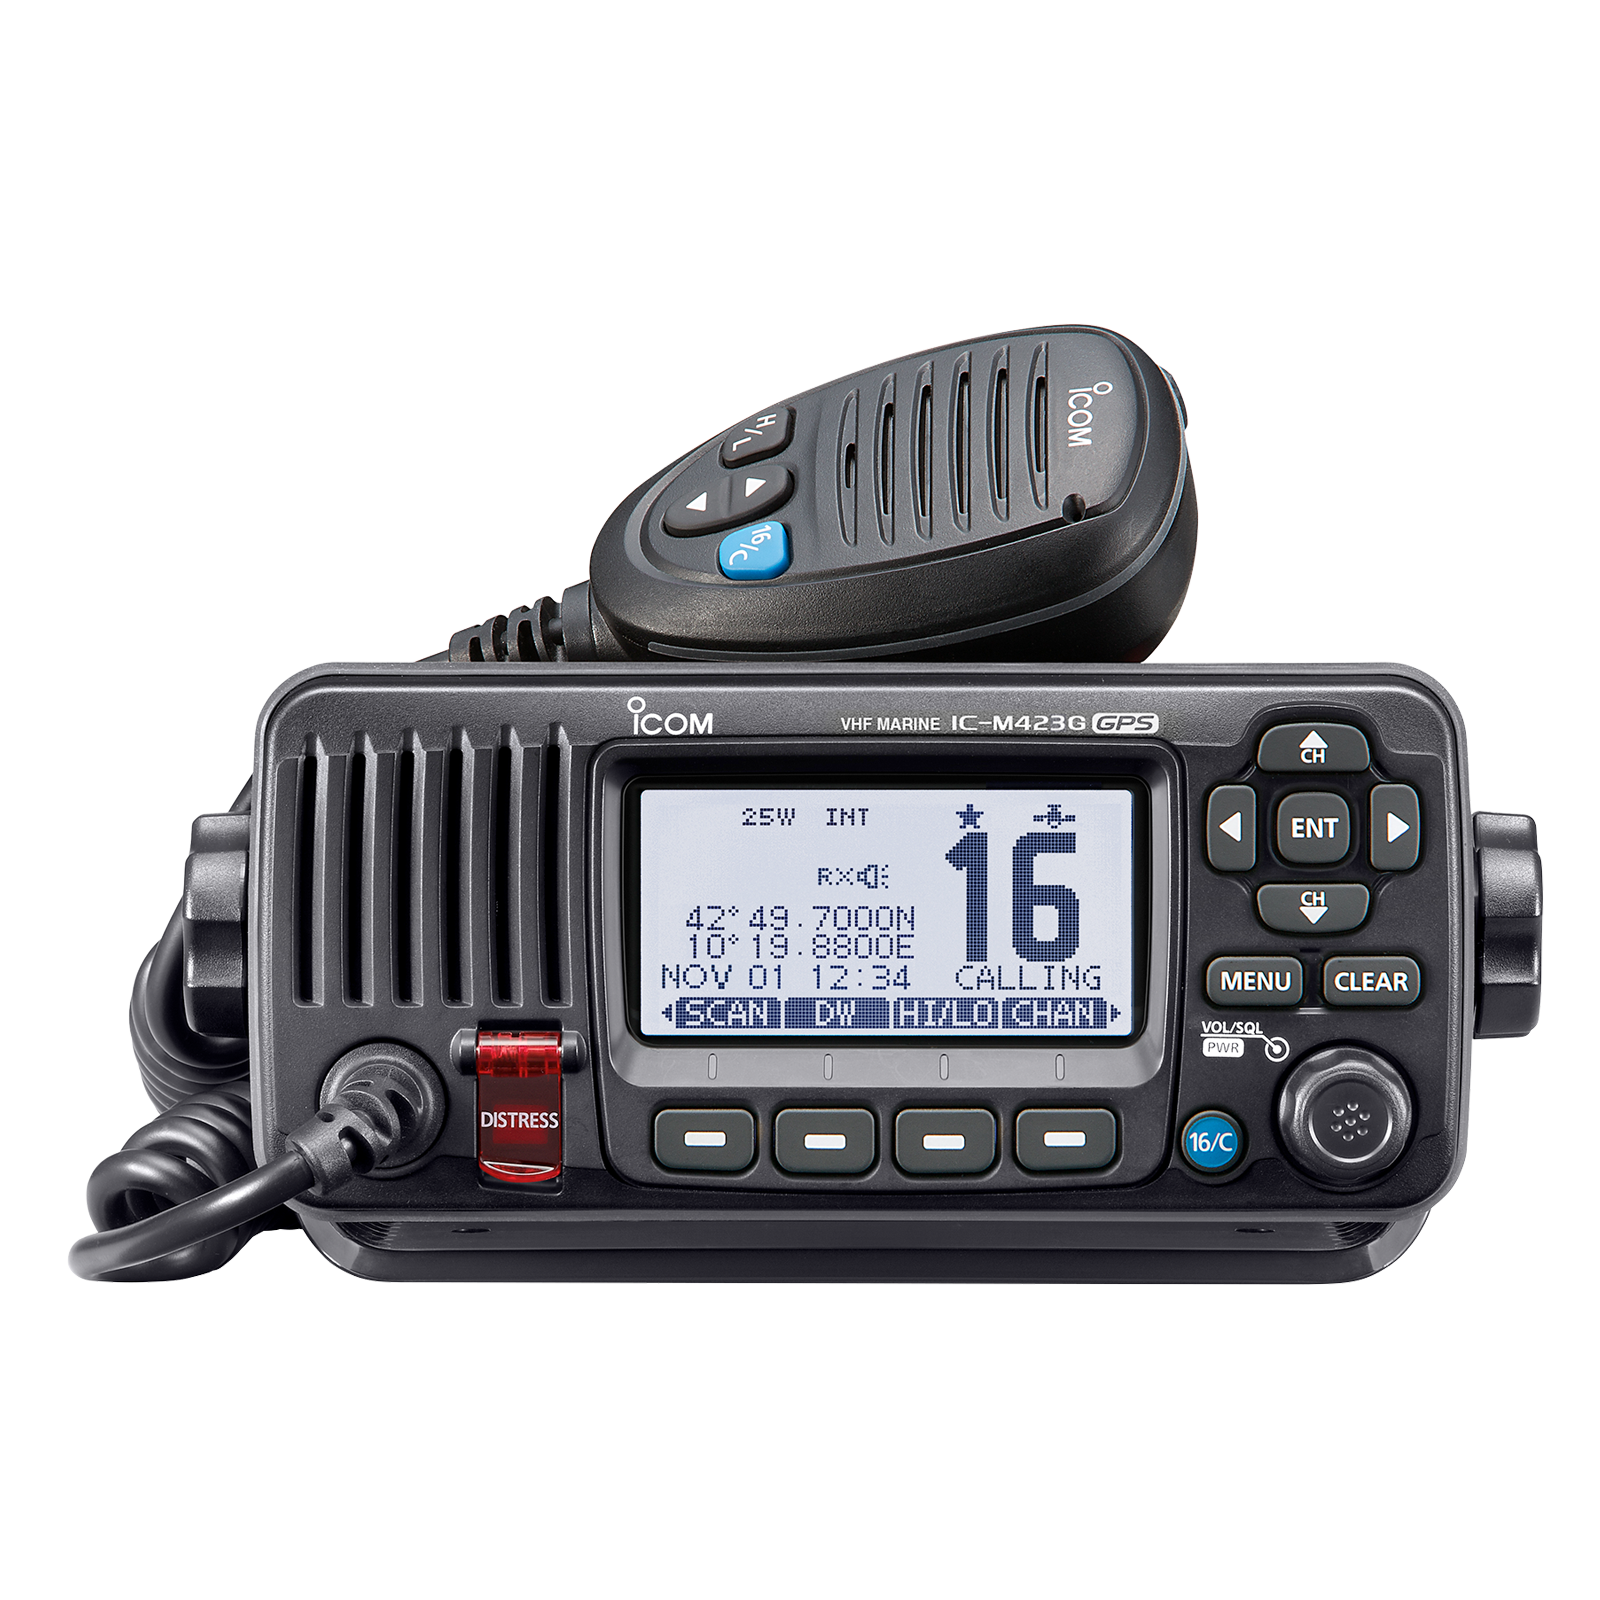 Telestar System Telecomunicazioni Roma Radio mobili VHF UHF ICOM per la comunicazione in barca adatte a qualsiasi tipo di esigenza nautica